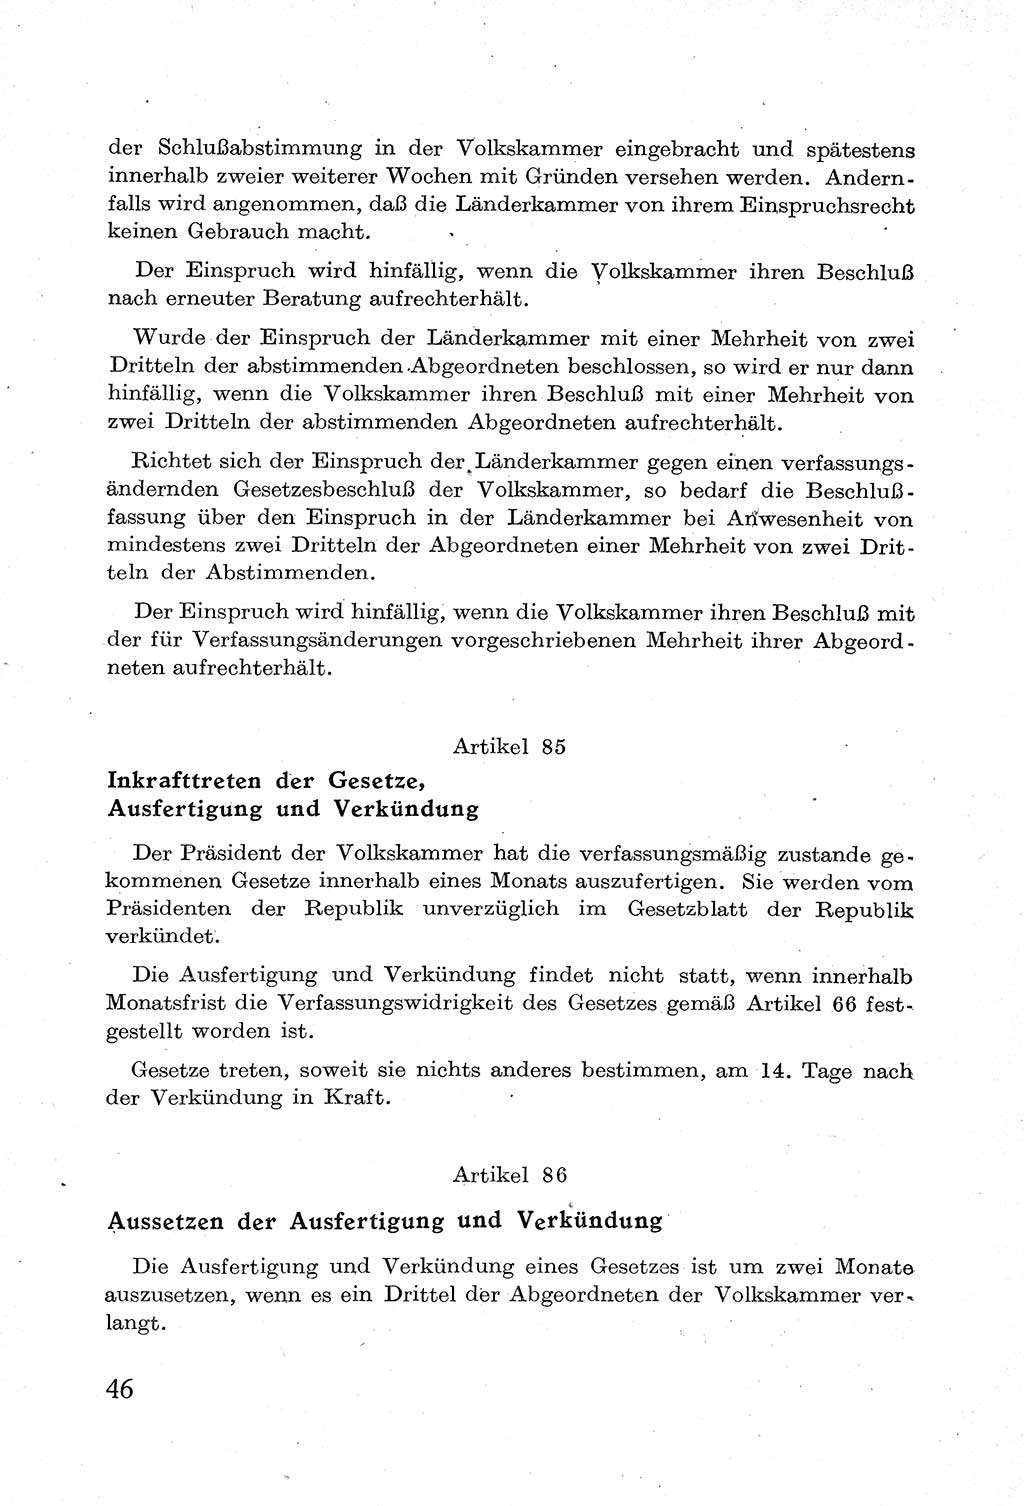 Verfassung der Deutschen Demokratischen Republik (DDR) mit einer Einleitung von Karl Steinhoff 1949, Seite 46 (Verf. DDR Einl. K. S. 1949, S. 46)